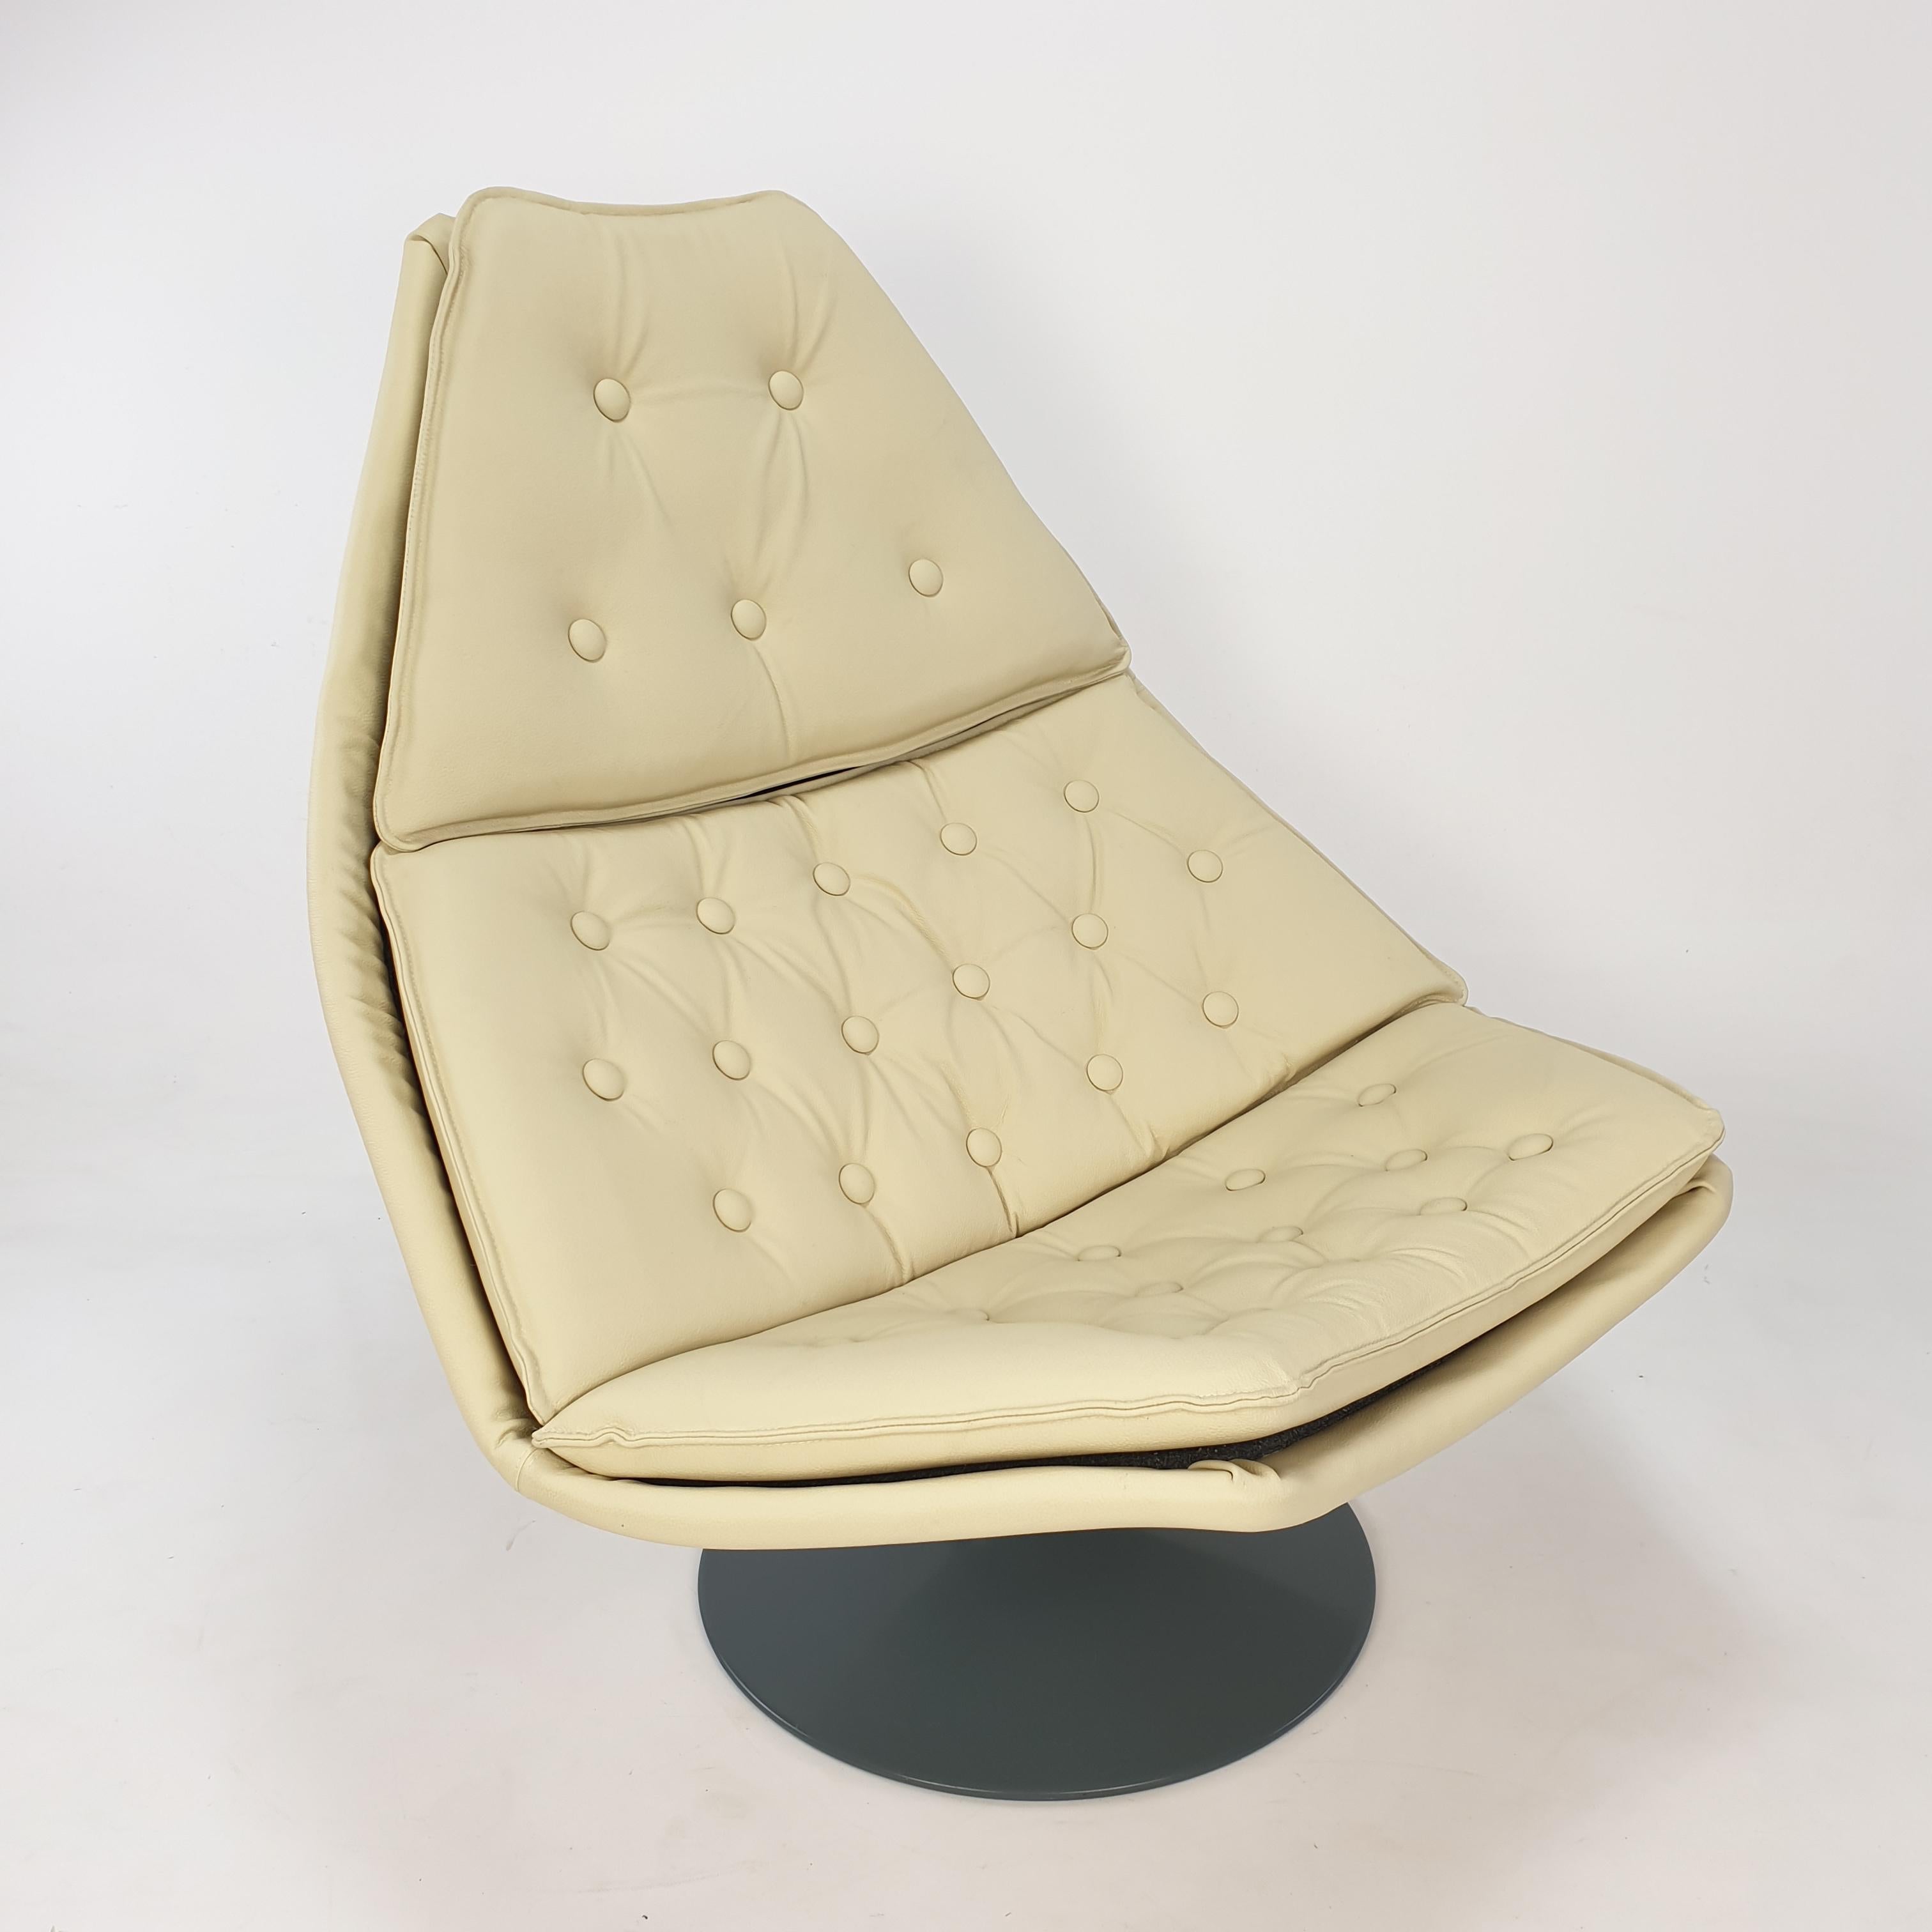 Chaise longue Artifort très confortable, modèle F588. Conçue par le célèbre designer anglais Geoffrey Harcourt dans les années 60. Il vient d'être retapissé avec du cuir de haute qualité et de la mousse neuve, il est donc en parfait état. Il est